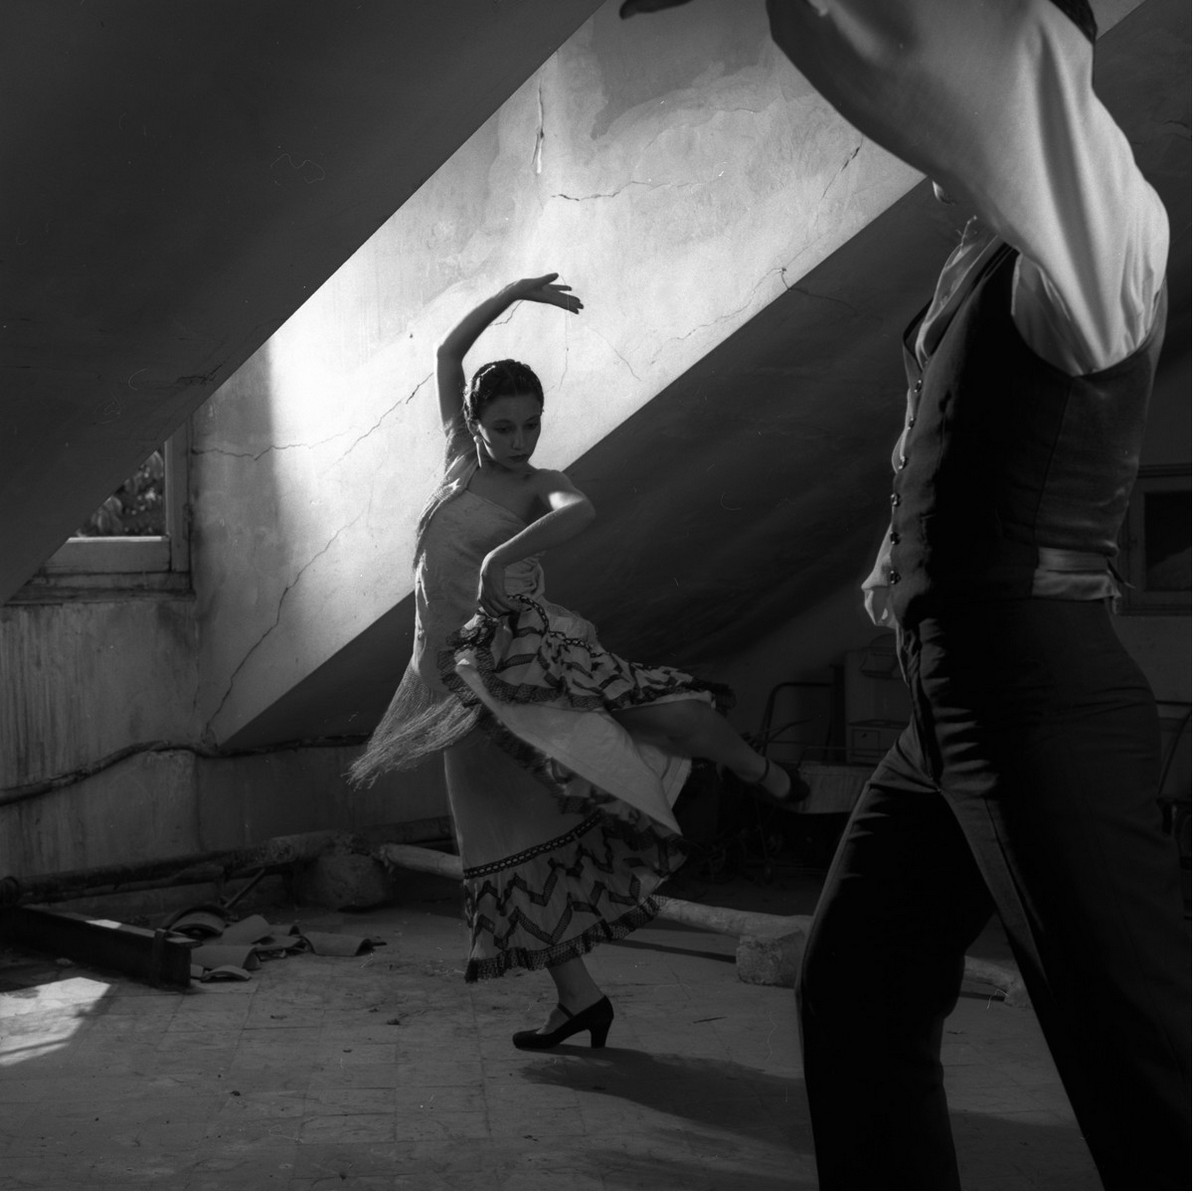 Кубинский балет, танго, фламенко и страсть в объективе Изабель Муньос